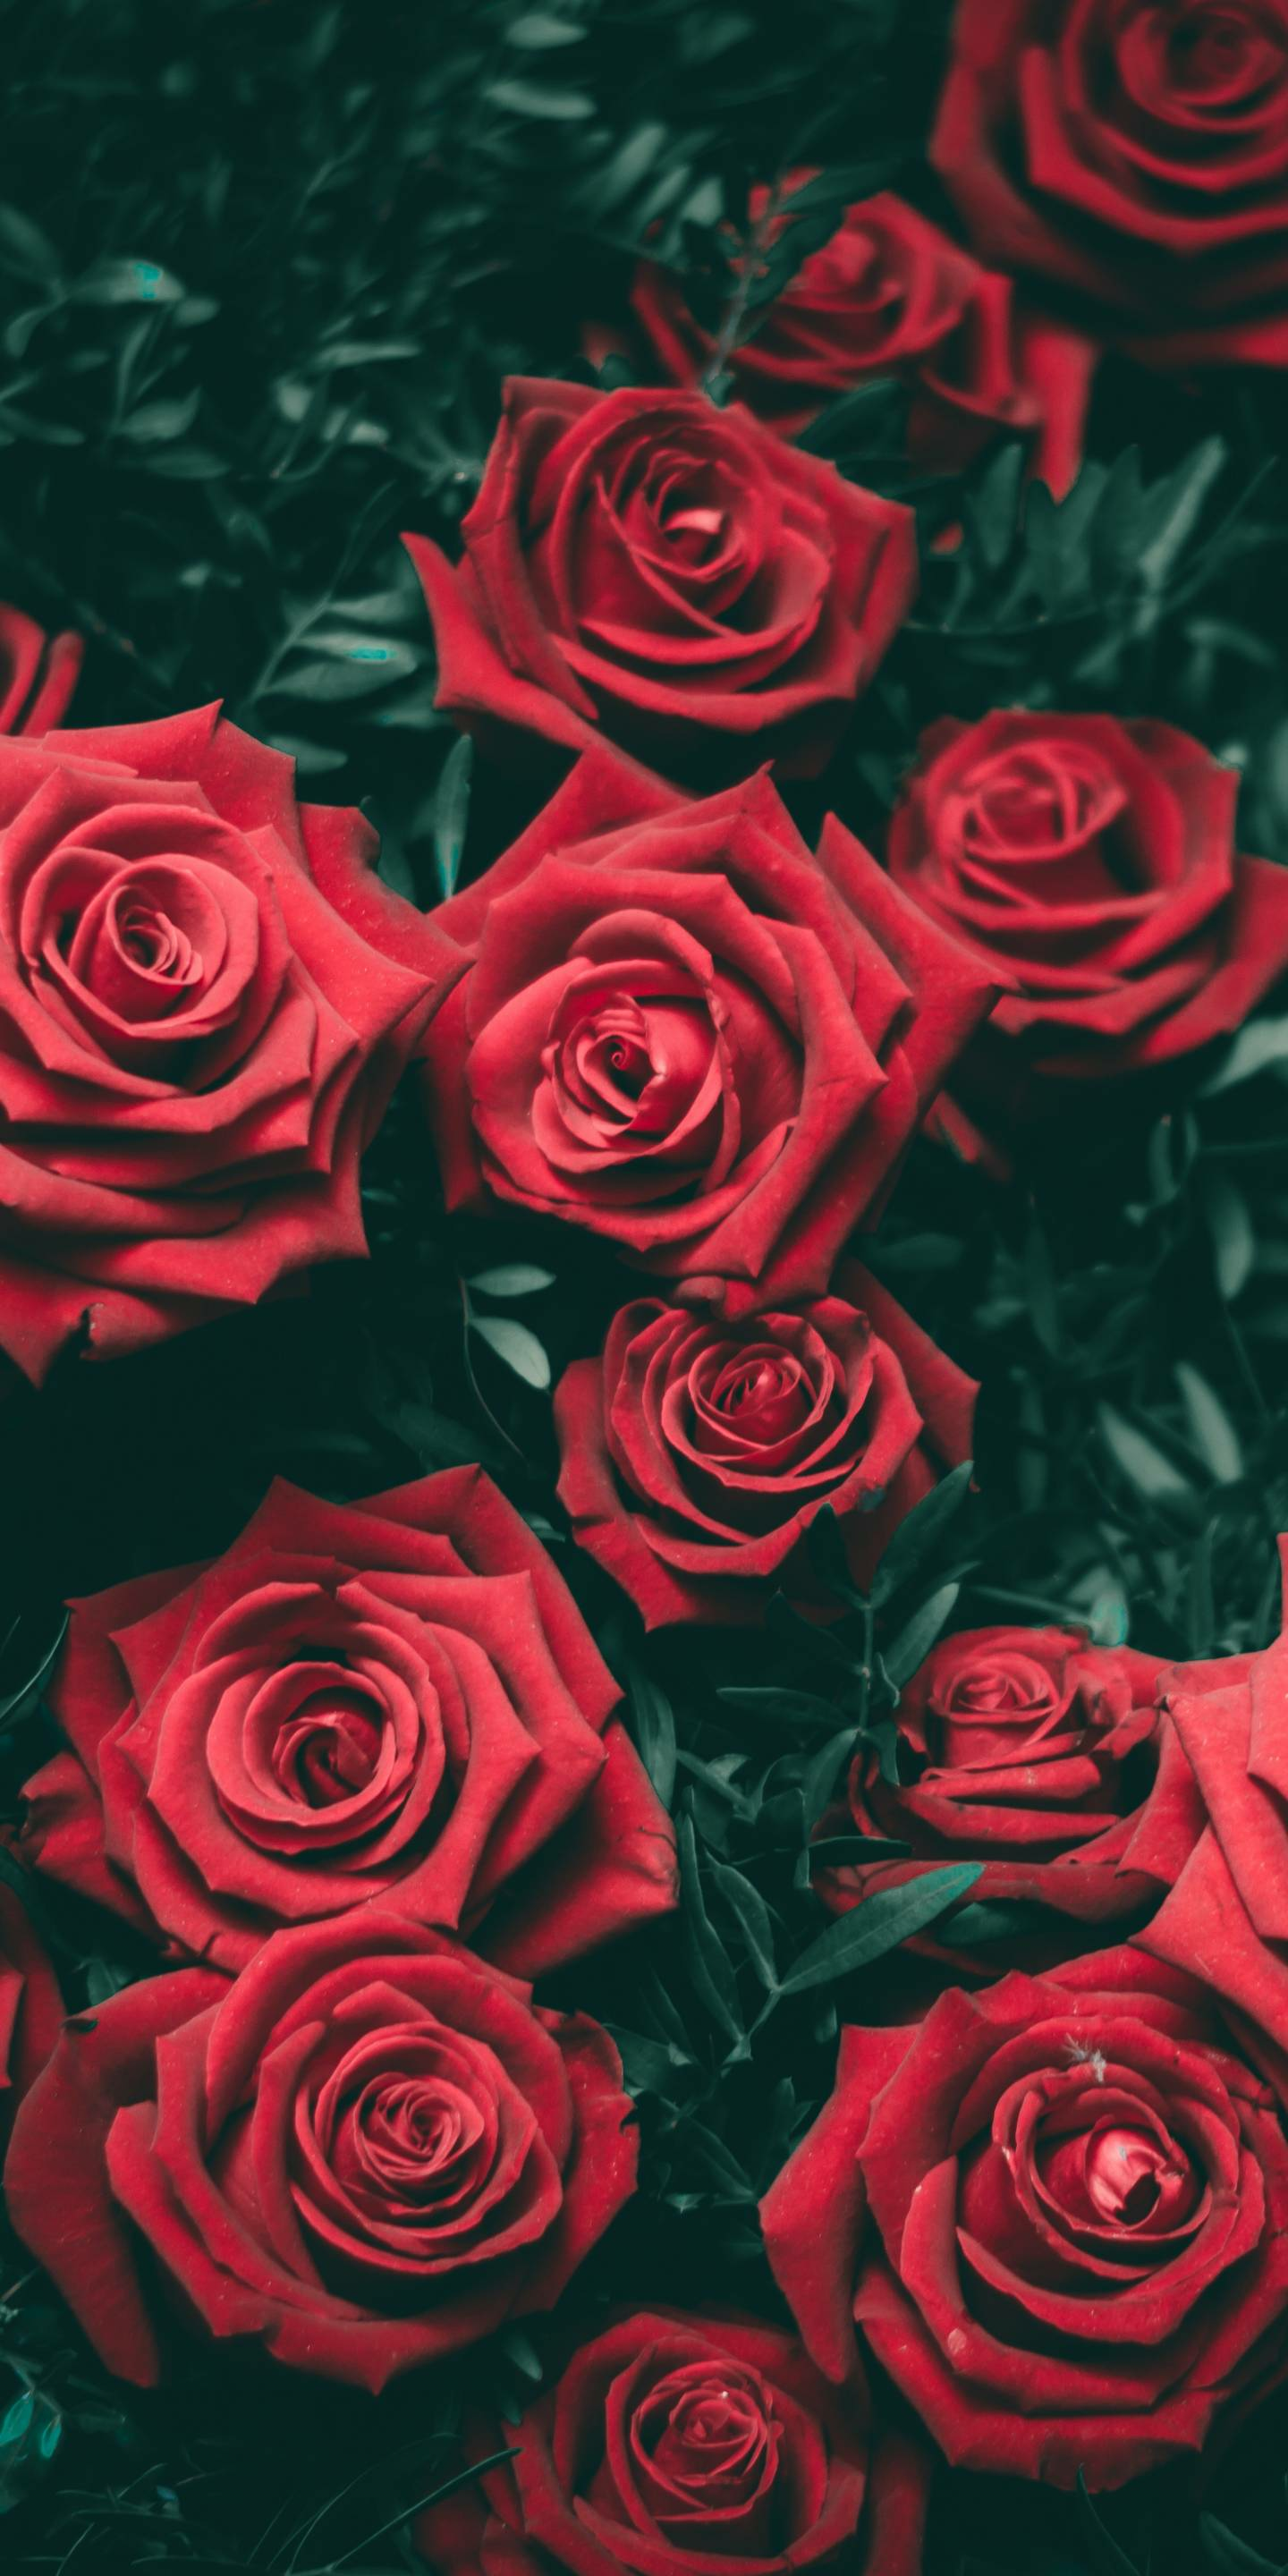  Rosen Hintergrundbild 1440x2880. Free download Red Rose Aesthetic Wallpaper Top Free Red Rose Aesthetic [1440x2880] for your Desktop, Mobile & Tablet. Explore Red Roses Aesthetic Wallpaper. Red Roses Wallpaper, Red Roses Black